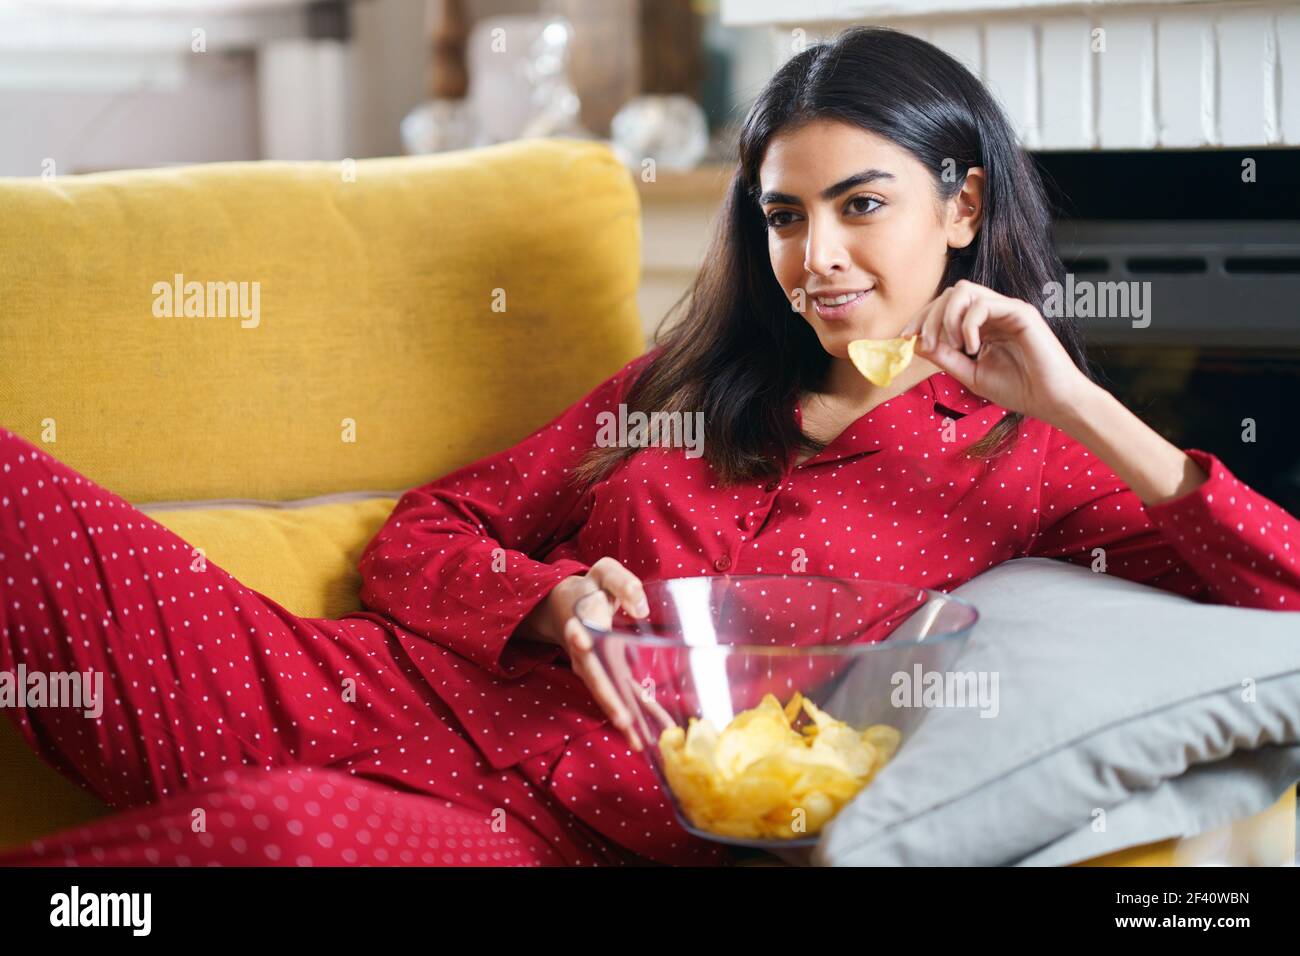 Perserin zu Hause beim Fernsehen. Mädchen essen Chips Kartoffeln. Perserin zu Hause Fernsehen Chips essen Kartoffeln Stockfoto